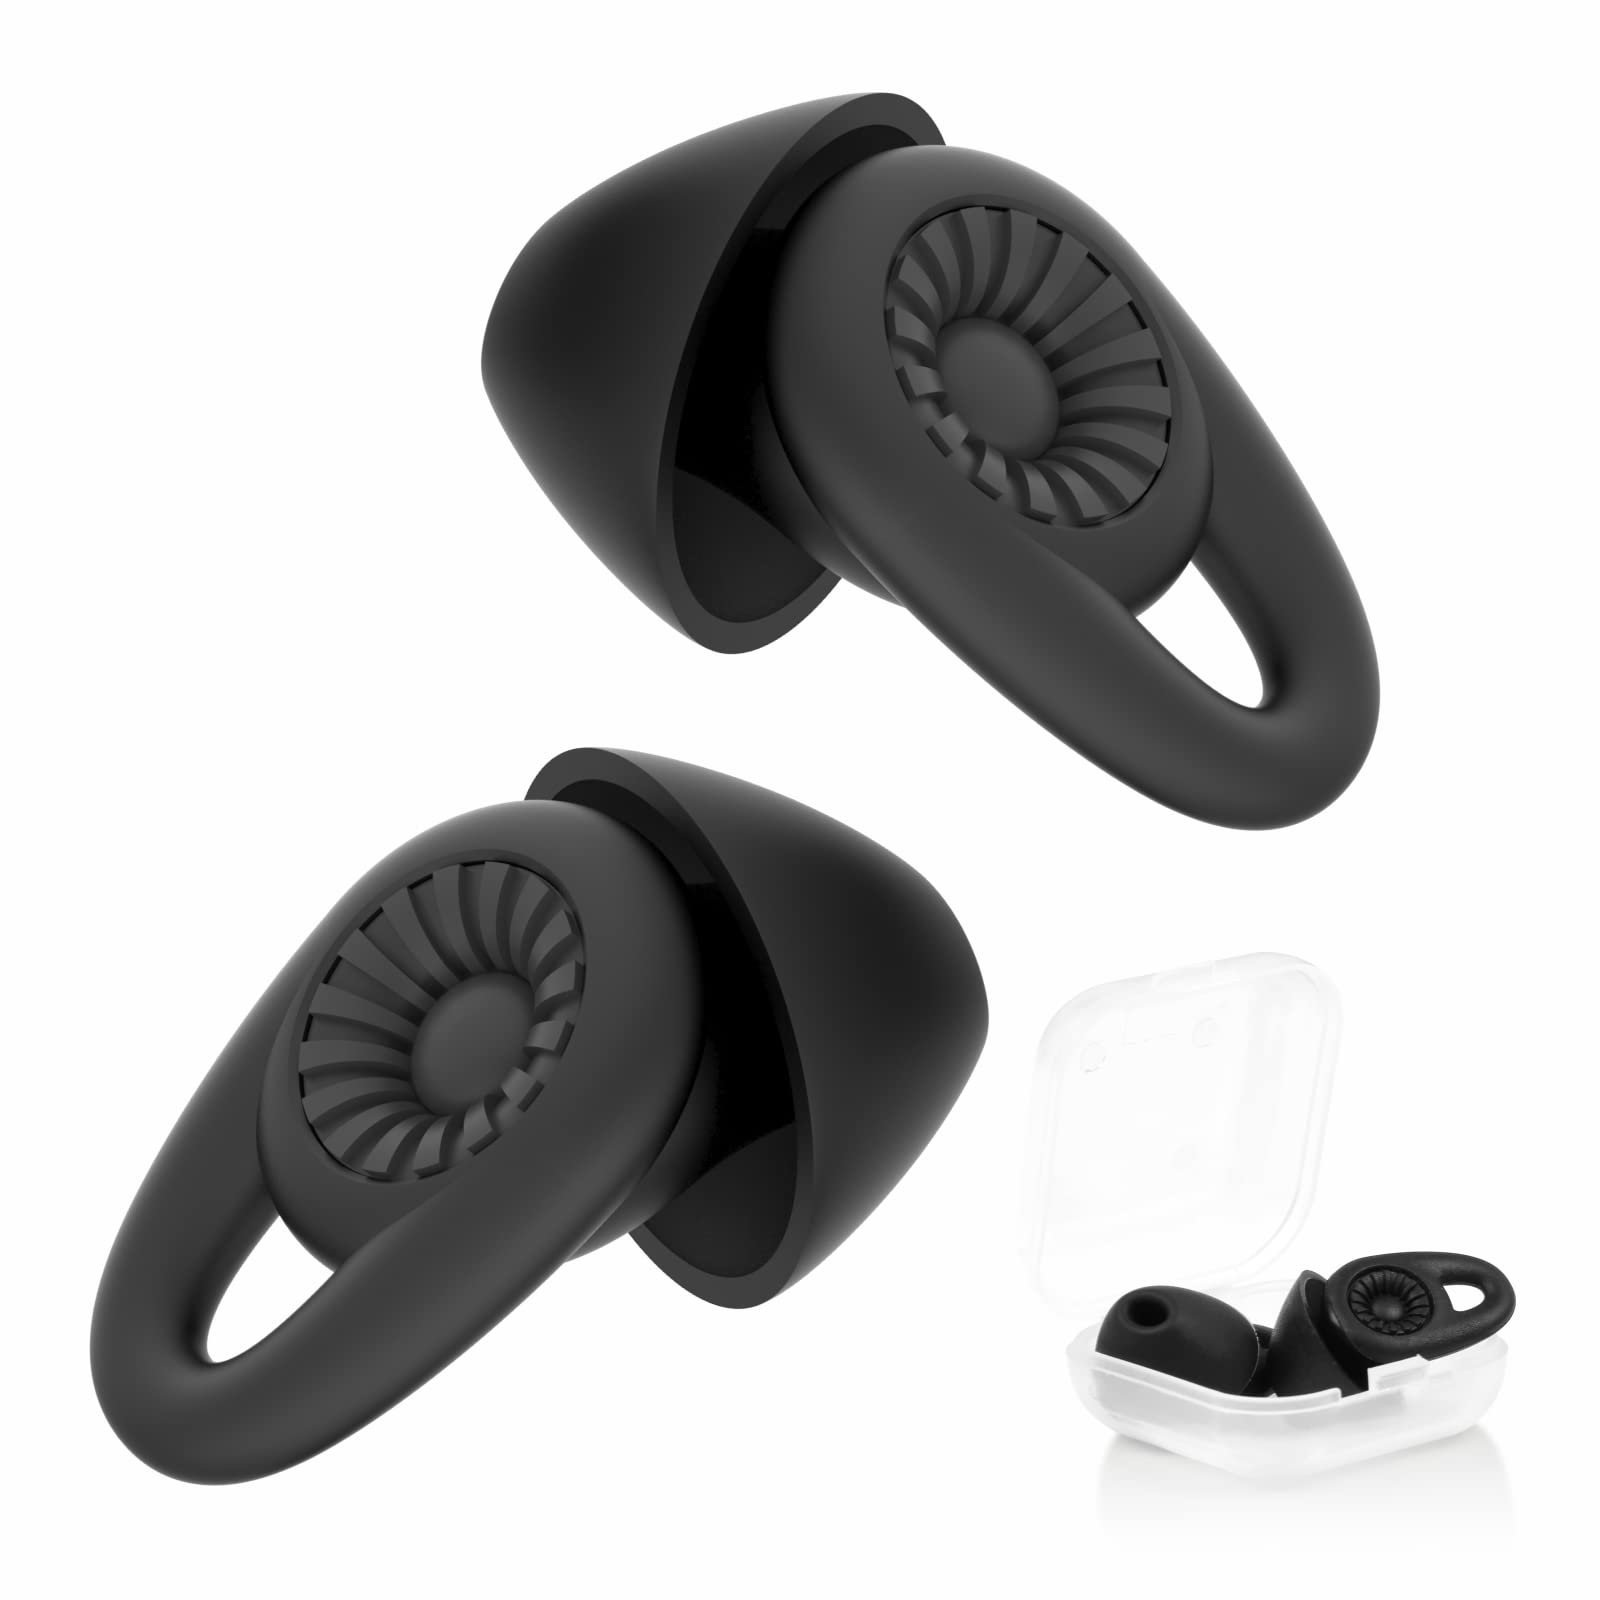 コードなし・ブラック ・遮音性能UPの睡眠用 耳栓Q21耳栓は耳の角度と形状を徹底的に分析して生まれた独特な形状の耳栓です。騒音を34dbカットできます。従来の製品より遮音性能UP！日常の騒々しさを心地の良い静けさに変えてくれます。また、大幅な円形傘構造での外耳道の形に沿ってぴったり塞ぐ、騒音をちゃんと和らげます。※外界音を完全に塞ぐのではなく、高い音から低い音までの全ての音域で音圧を34dB 減衰します。・に基づいた2点改良の設計お客様のお声より、弊社は「つけ心地」を重視し、新型耳栓は2点の改良を実現します。耳栓の耳に入れる部分の長さを短縮し、耳の奥にたどりつけないです。また、耳栓端末の突出ひれの部分をもっと巧に設計し、ちゃんと耳甲介腔に隠れできます。耳にフィットし外れにくく、睡眠中に装着しても抜け落ちません。長時間装着していると耳穴が圧迫されて違和感を感じないんです。・優れた素材＆快適なつけ心地環境保護、無毒性の柔らかい素材を採用し、汚れても水洗いすれば清潔に再使用でき、衛生的です。柔軟性抜群で、睡眠時など長時間装着しても耳が痛くならない快適なつけ